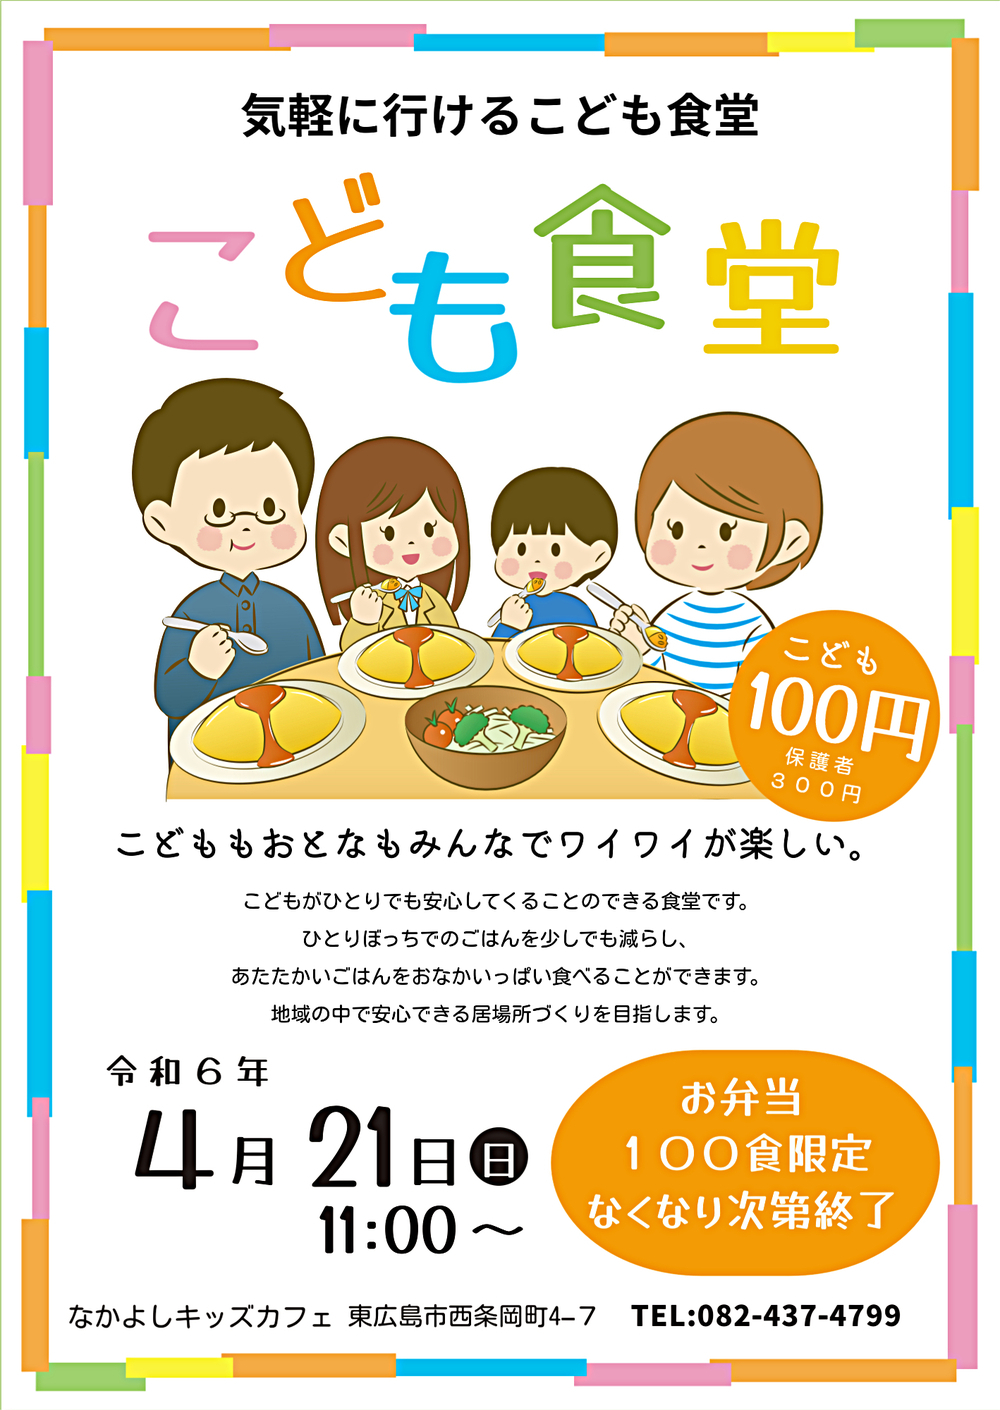 Nakayoshi Kids Cafe realizado em 21 de abril